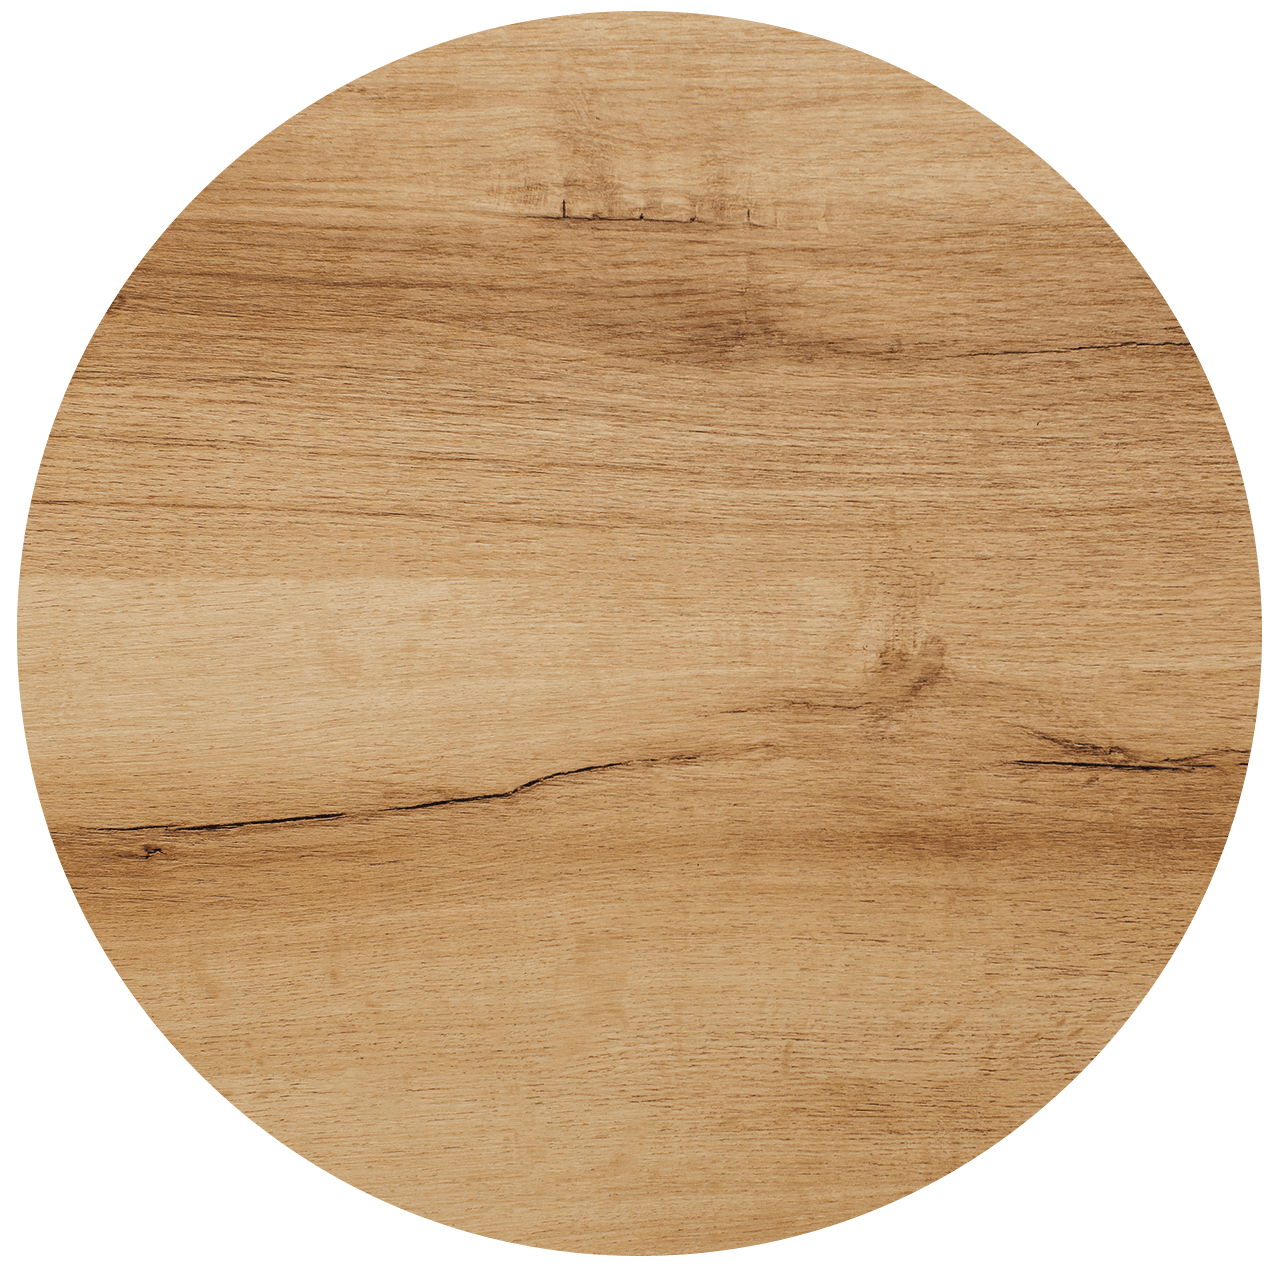 Holztextur als Designelement von Formschön Friseure aus Regensburg